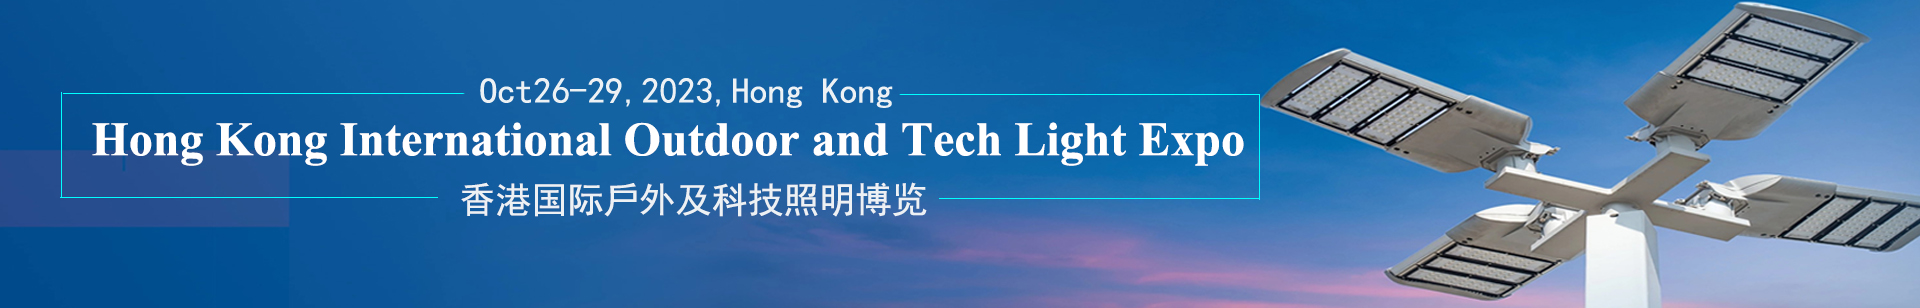 HKTDC Hong Kong International Outdoor and Tech Light Expo